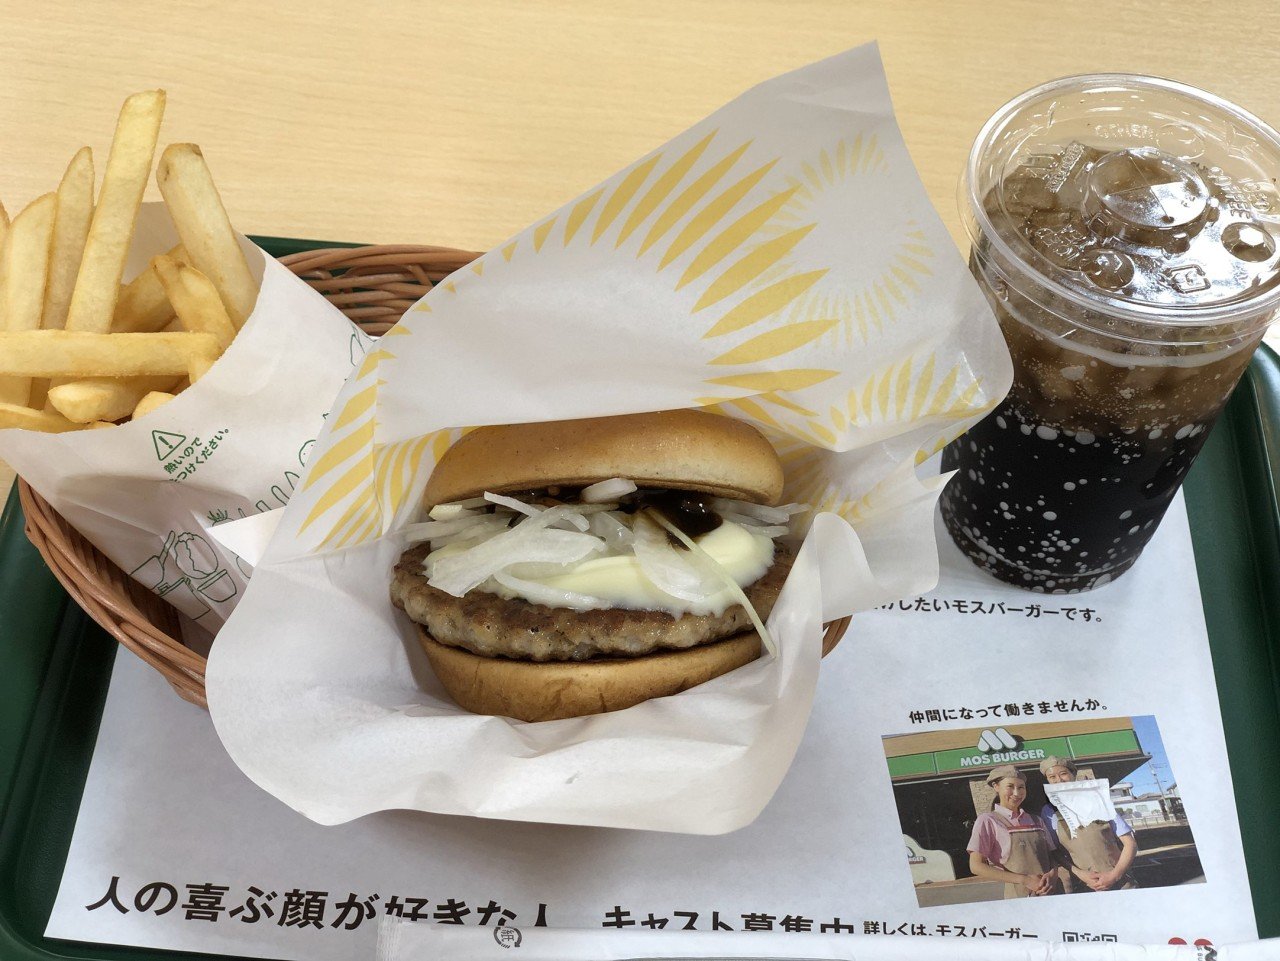 1.jpg 오사카/교토 여행가서 먹은 음식들